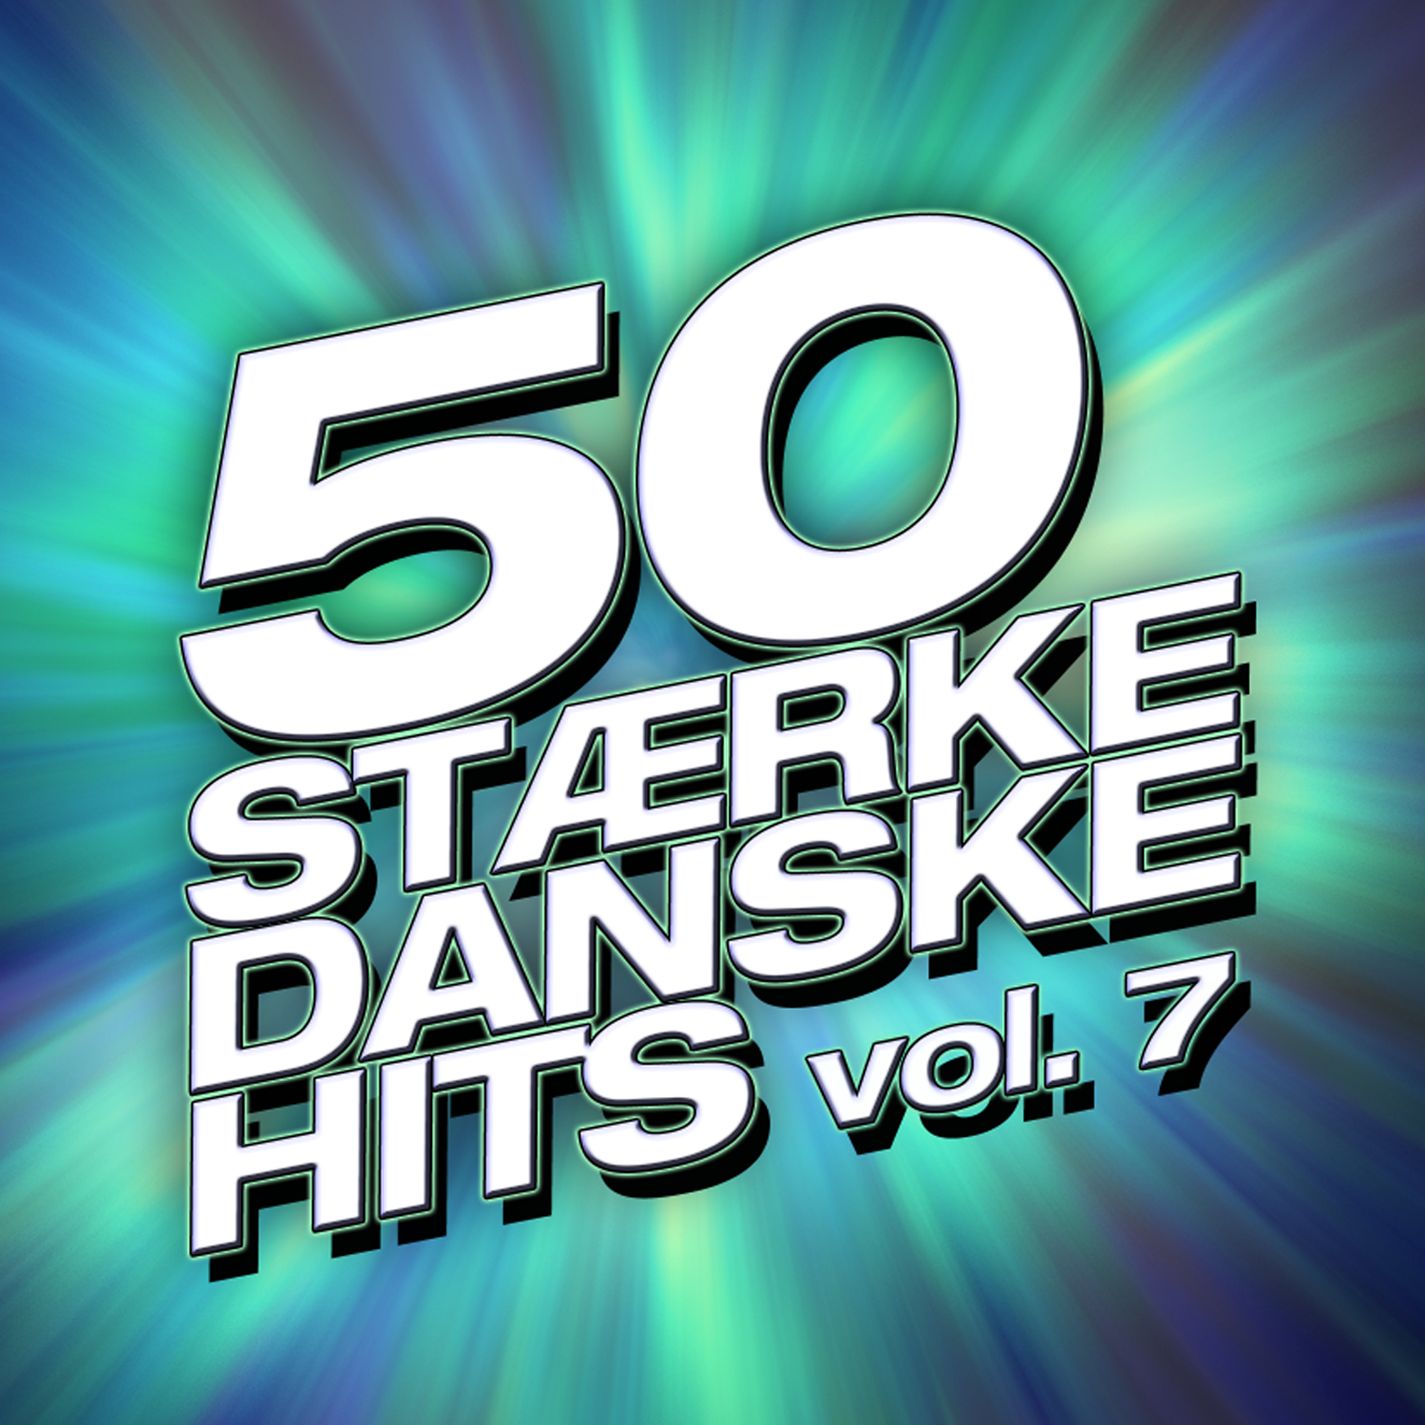 50 St rke Danske Hits Vol. 7